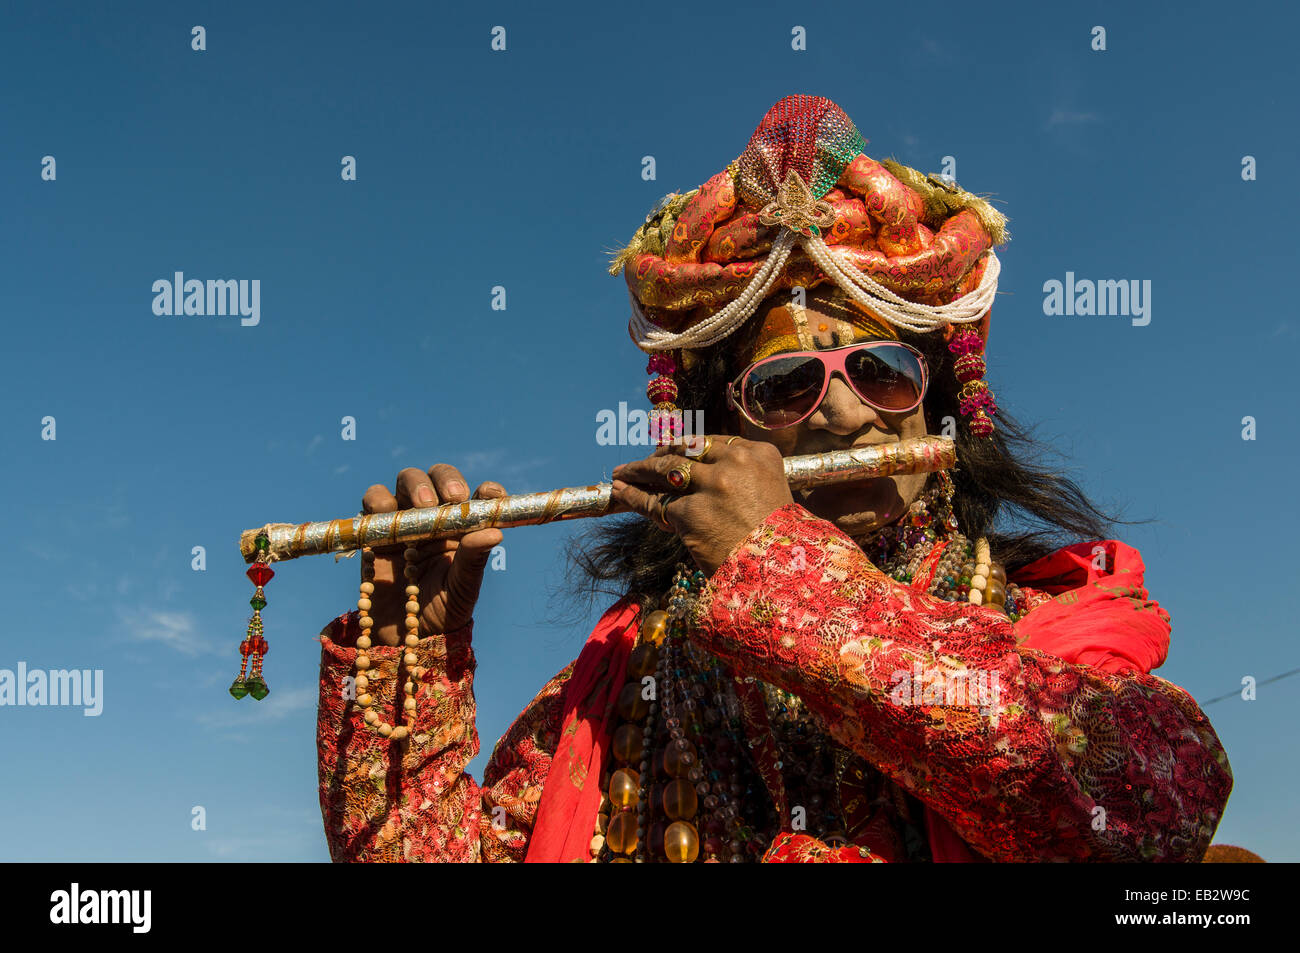 En costume coloré au cours de flûte jouant dévot Kumbh Mela, Allahabad, Uttar Pradesh, Inde Banque D'Images